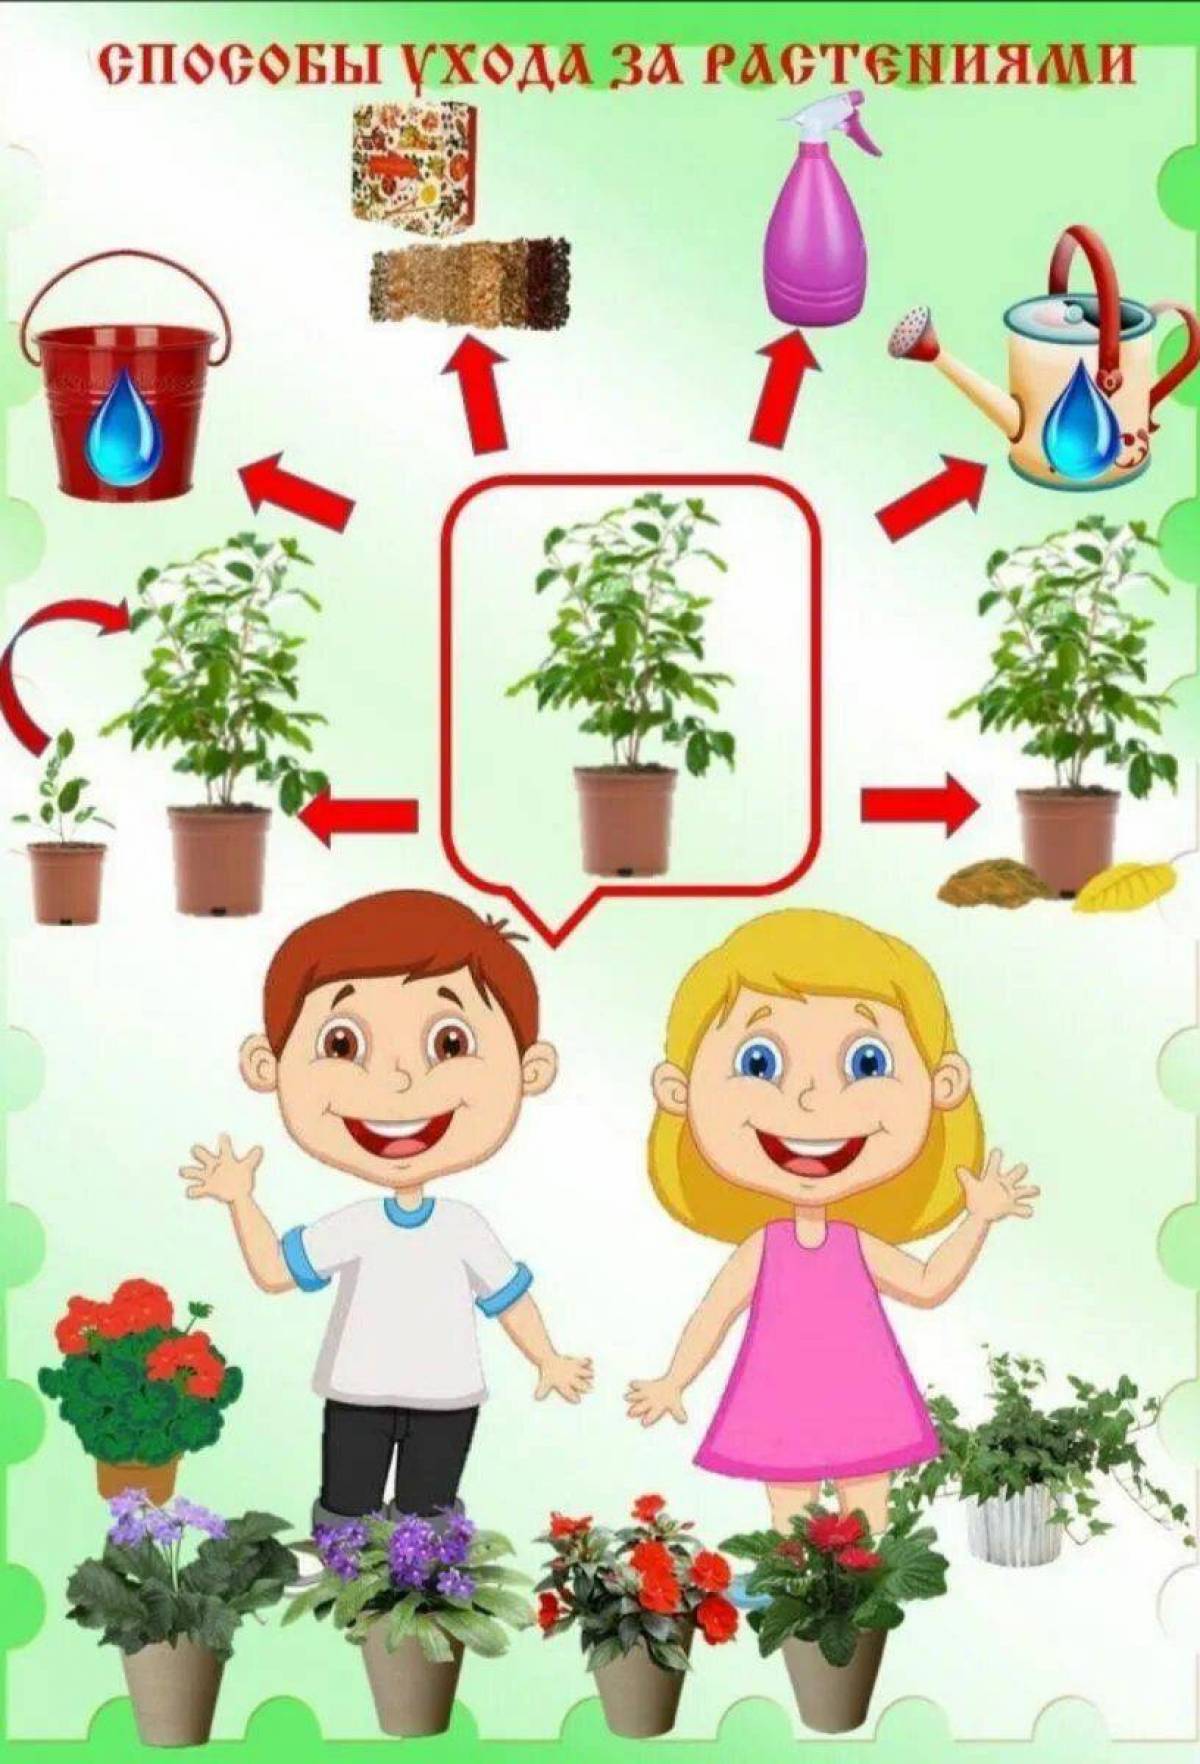 Уход за растениями в старшей группе. Комнатные растения для детсада. Комнатные растения для дошкольников. Ухаживание за растениями в детском саду. Растения для дошкольников.